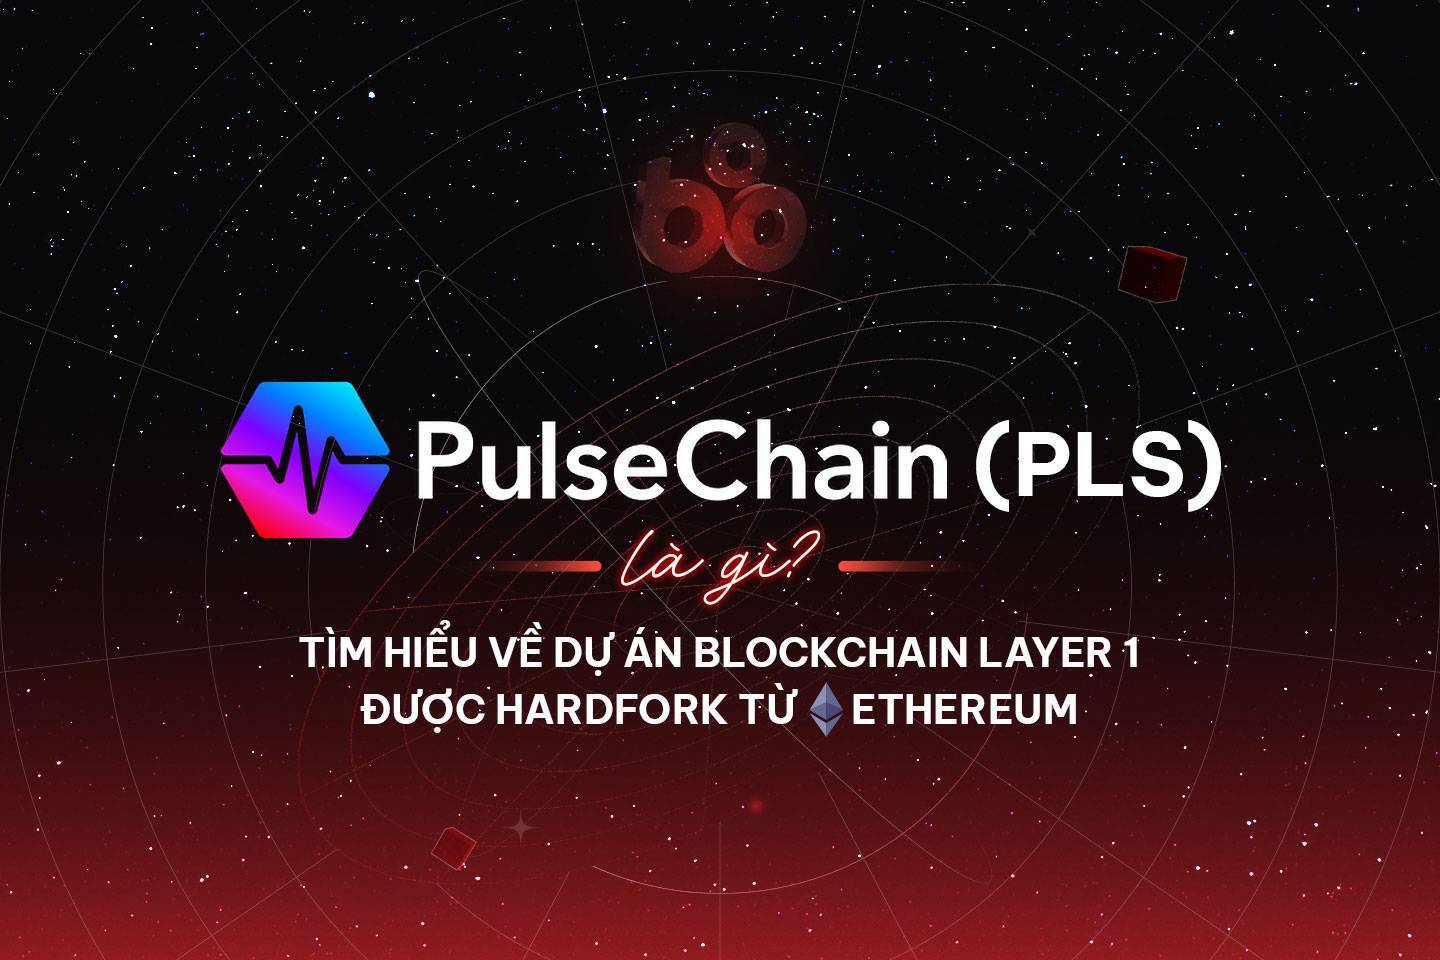 Pulsechain pls Là Gì Tìm Hiểu Về Dự Án Blockchain Layer 1 Được Hardfork Từ Ethereum